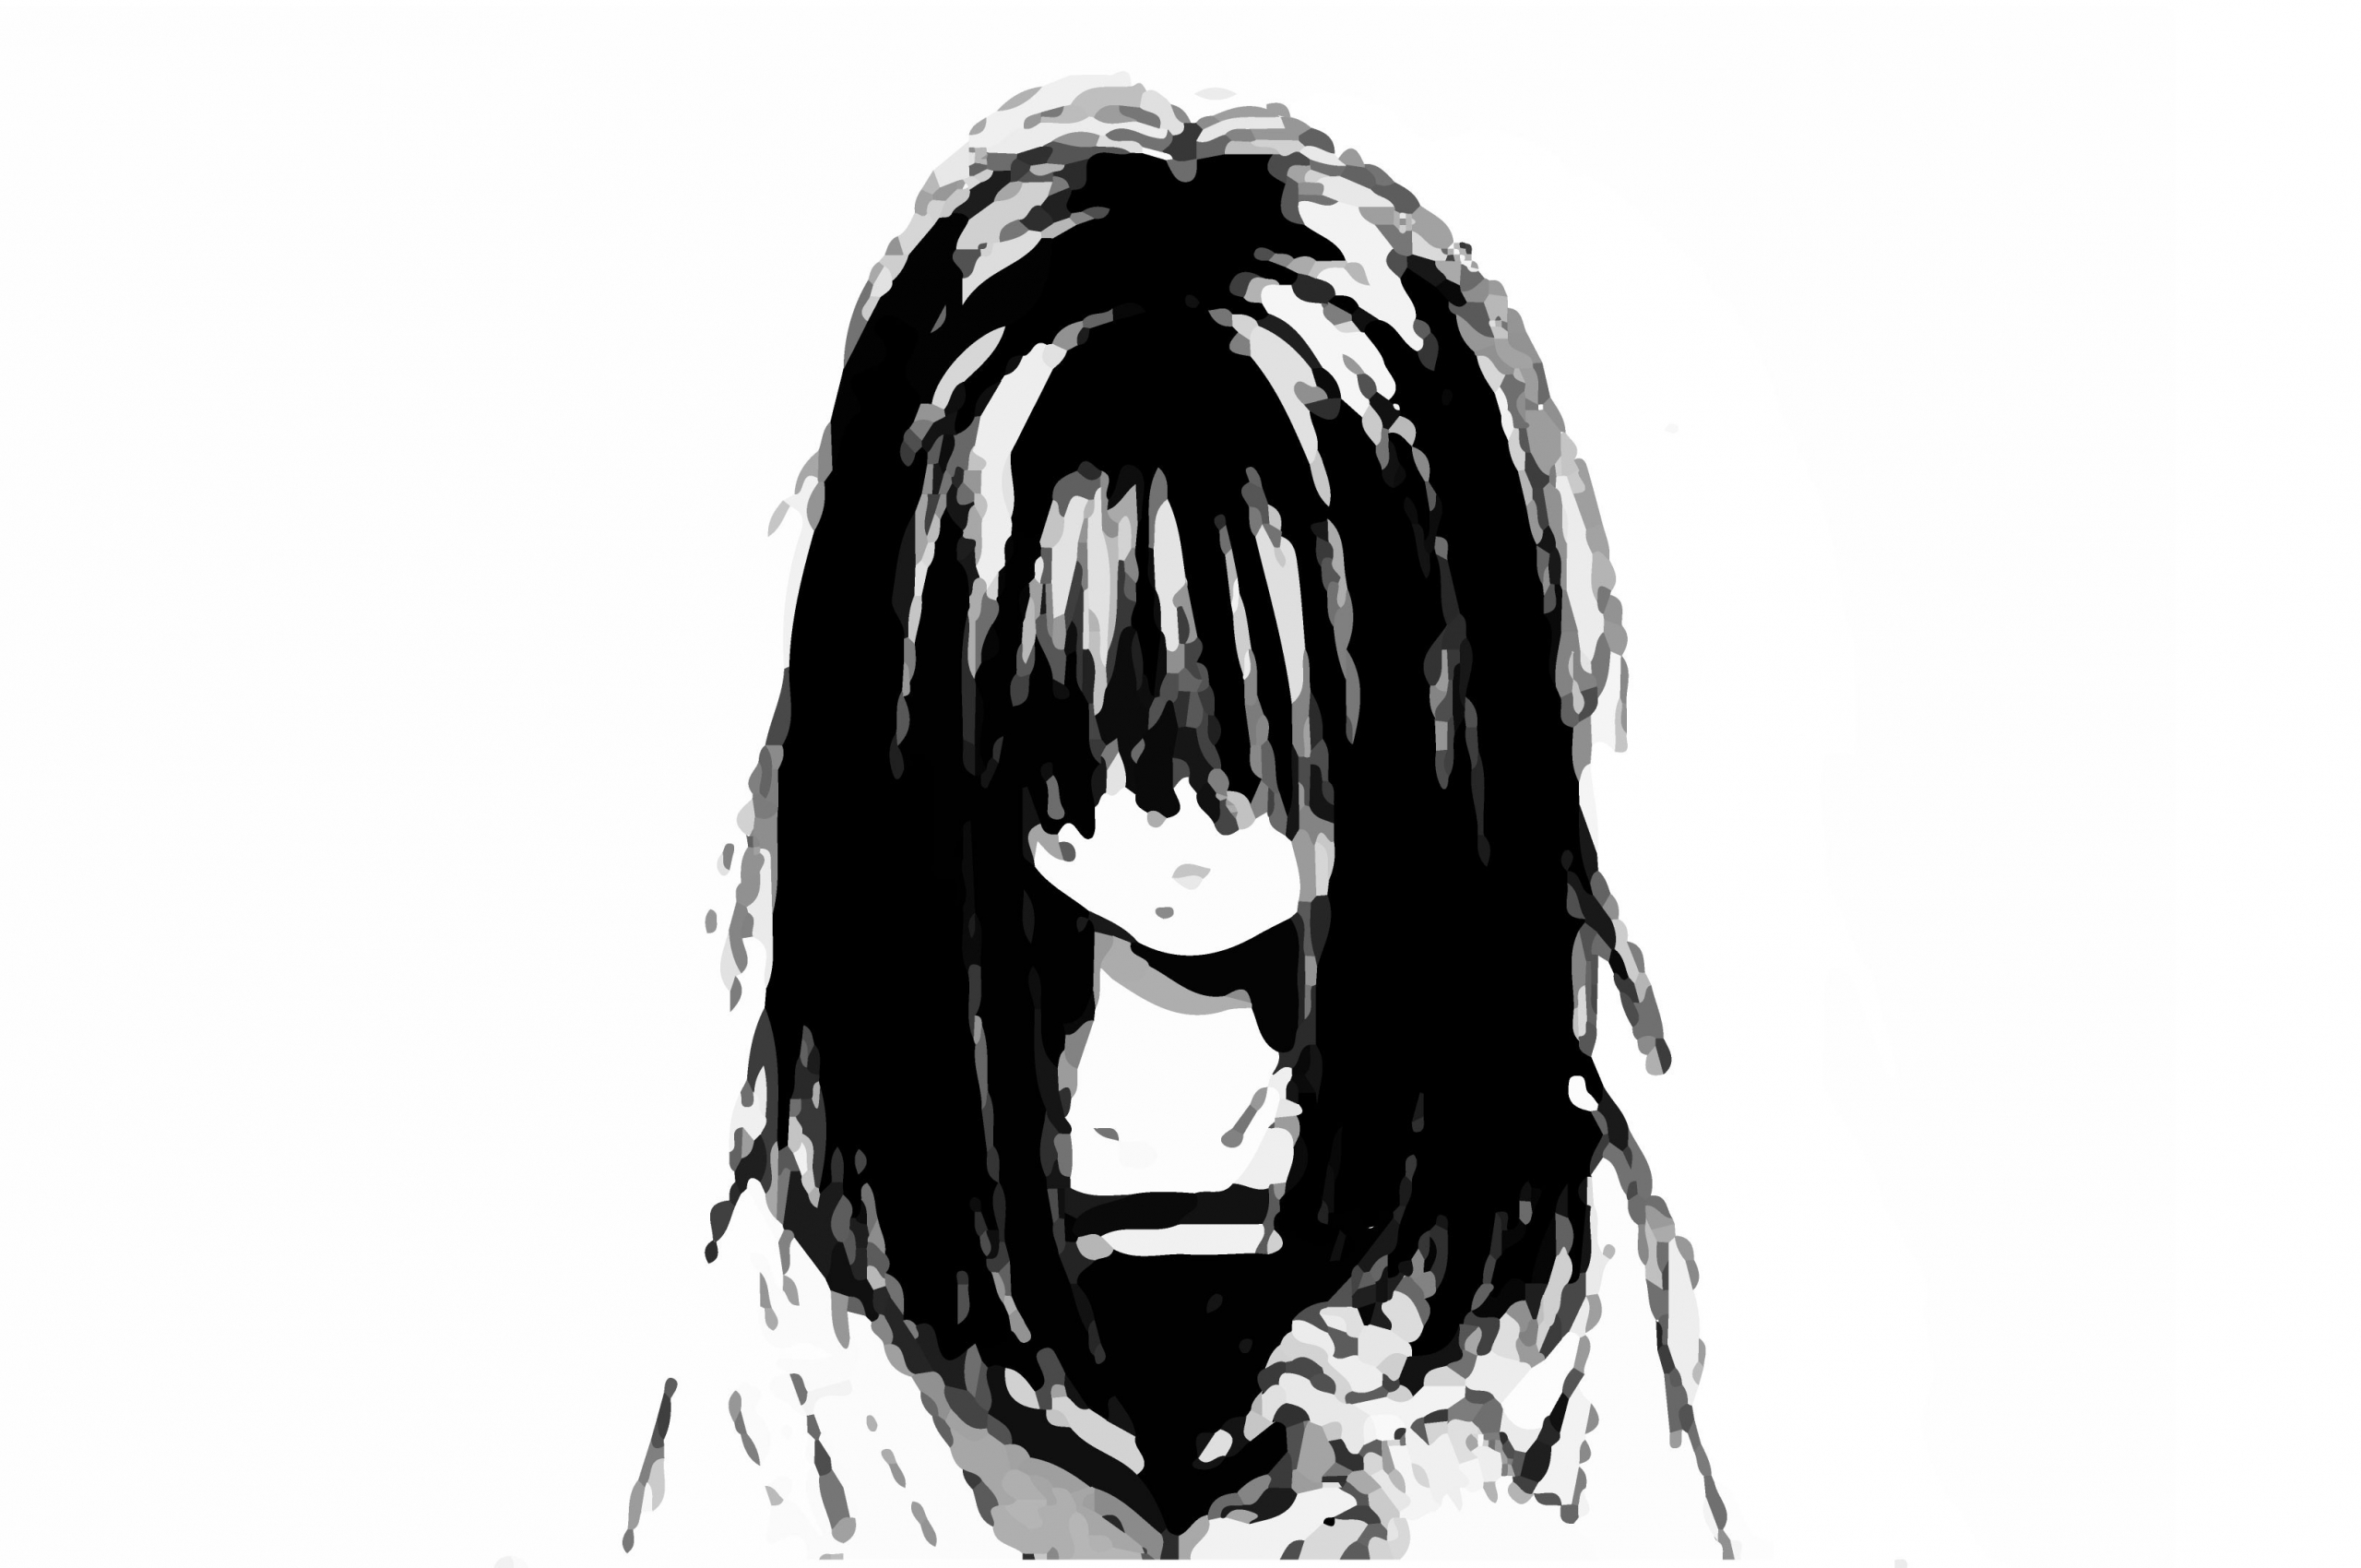 87 Sad Anime Wallpapers On Wallpaperplay - Crying Wallpaper Anime Sad , HD Wallpaper & Backgrounds